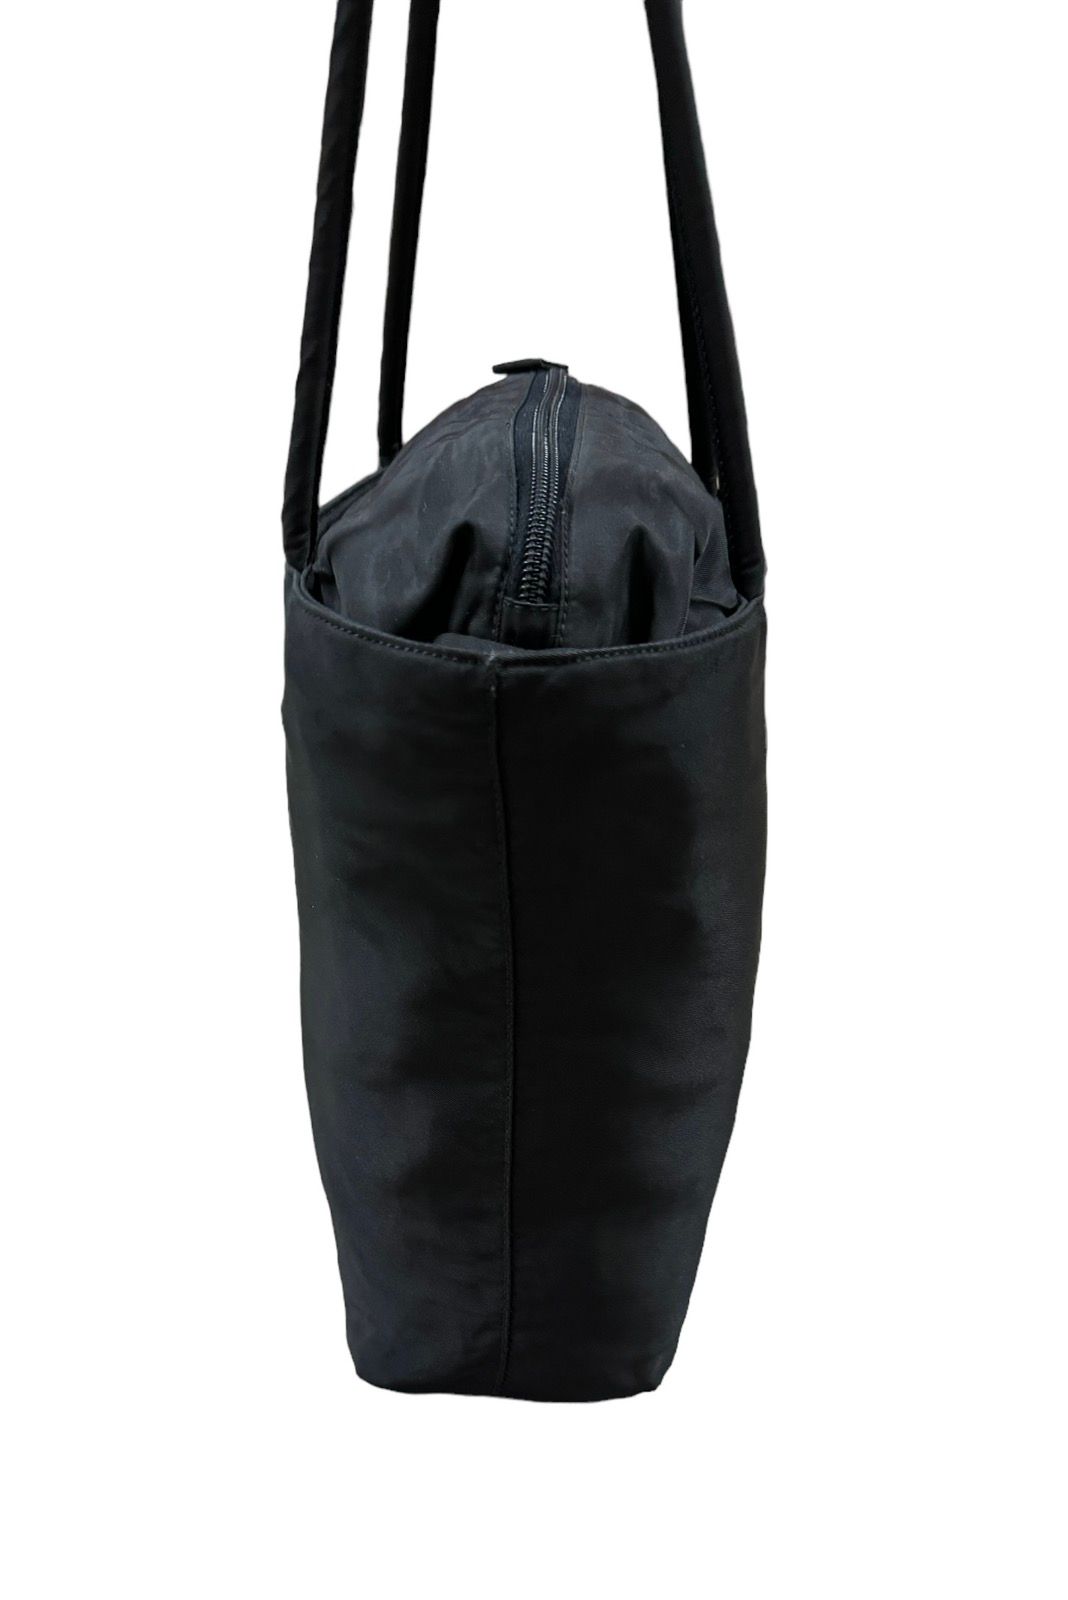 Authentic🔥Prada Tessuto Black Nylon Tote Bags - 13